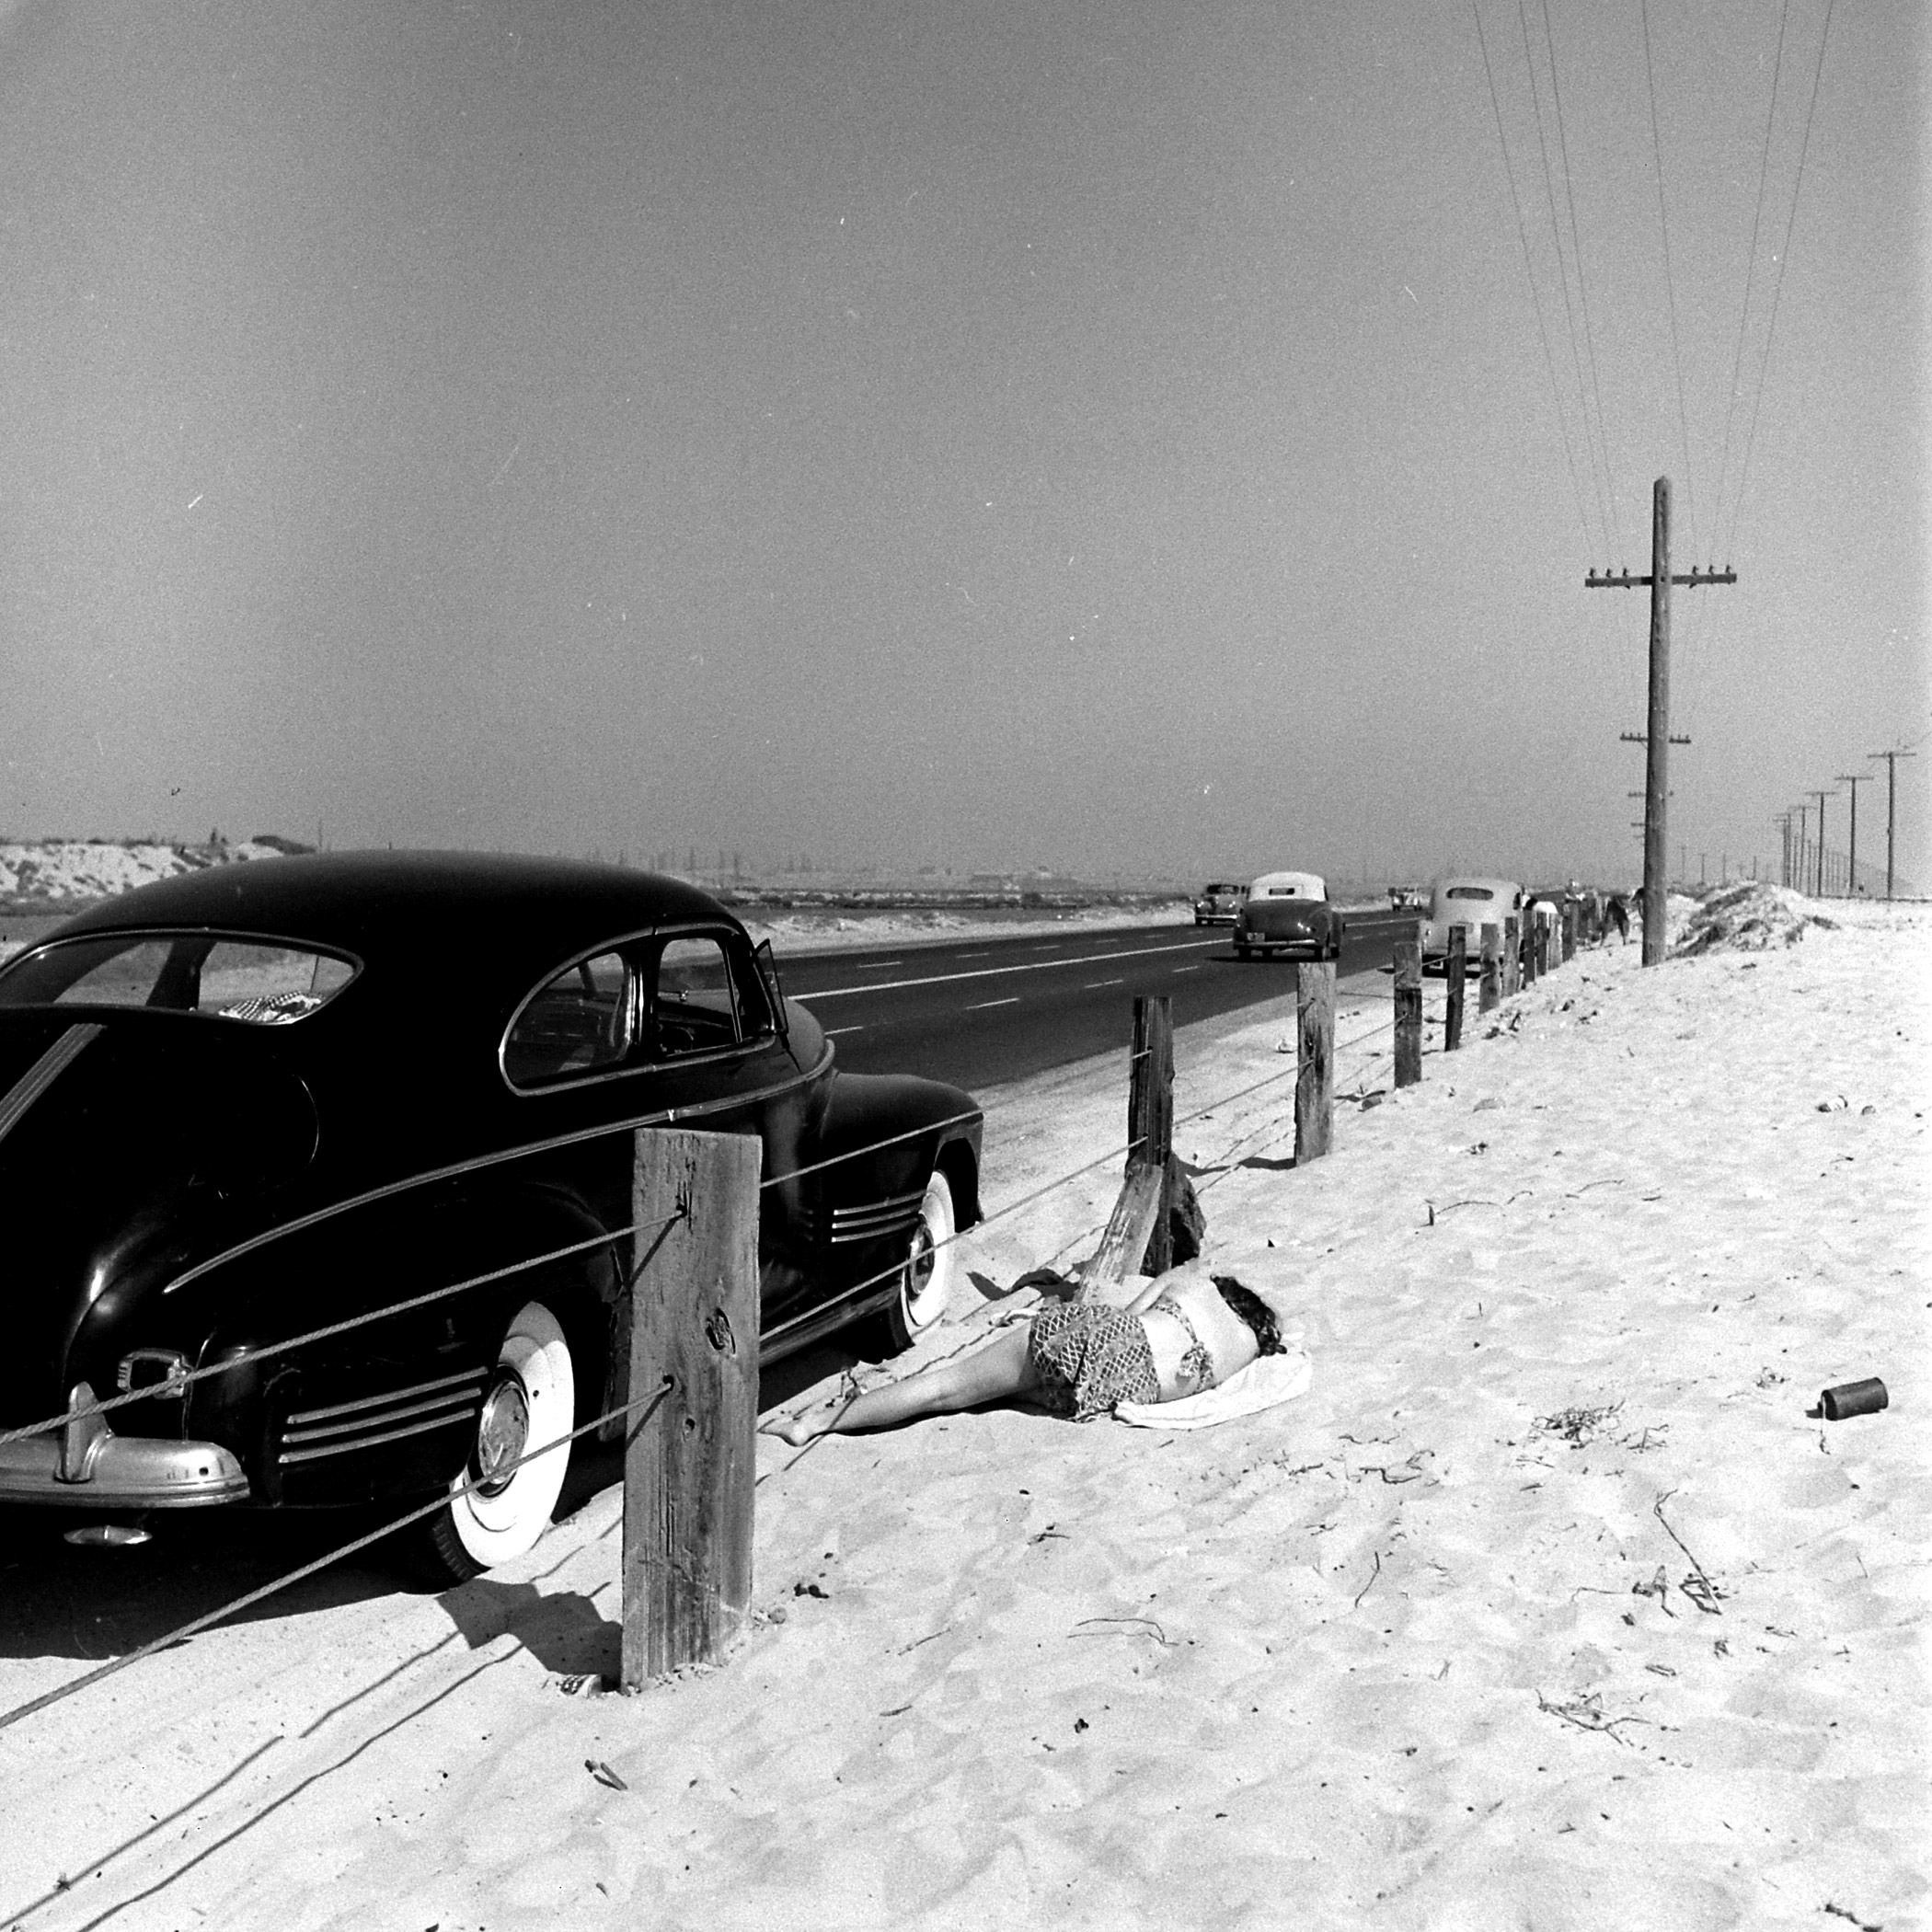 Santa Monica Beach, California, 1948.